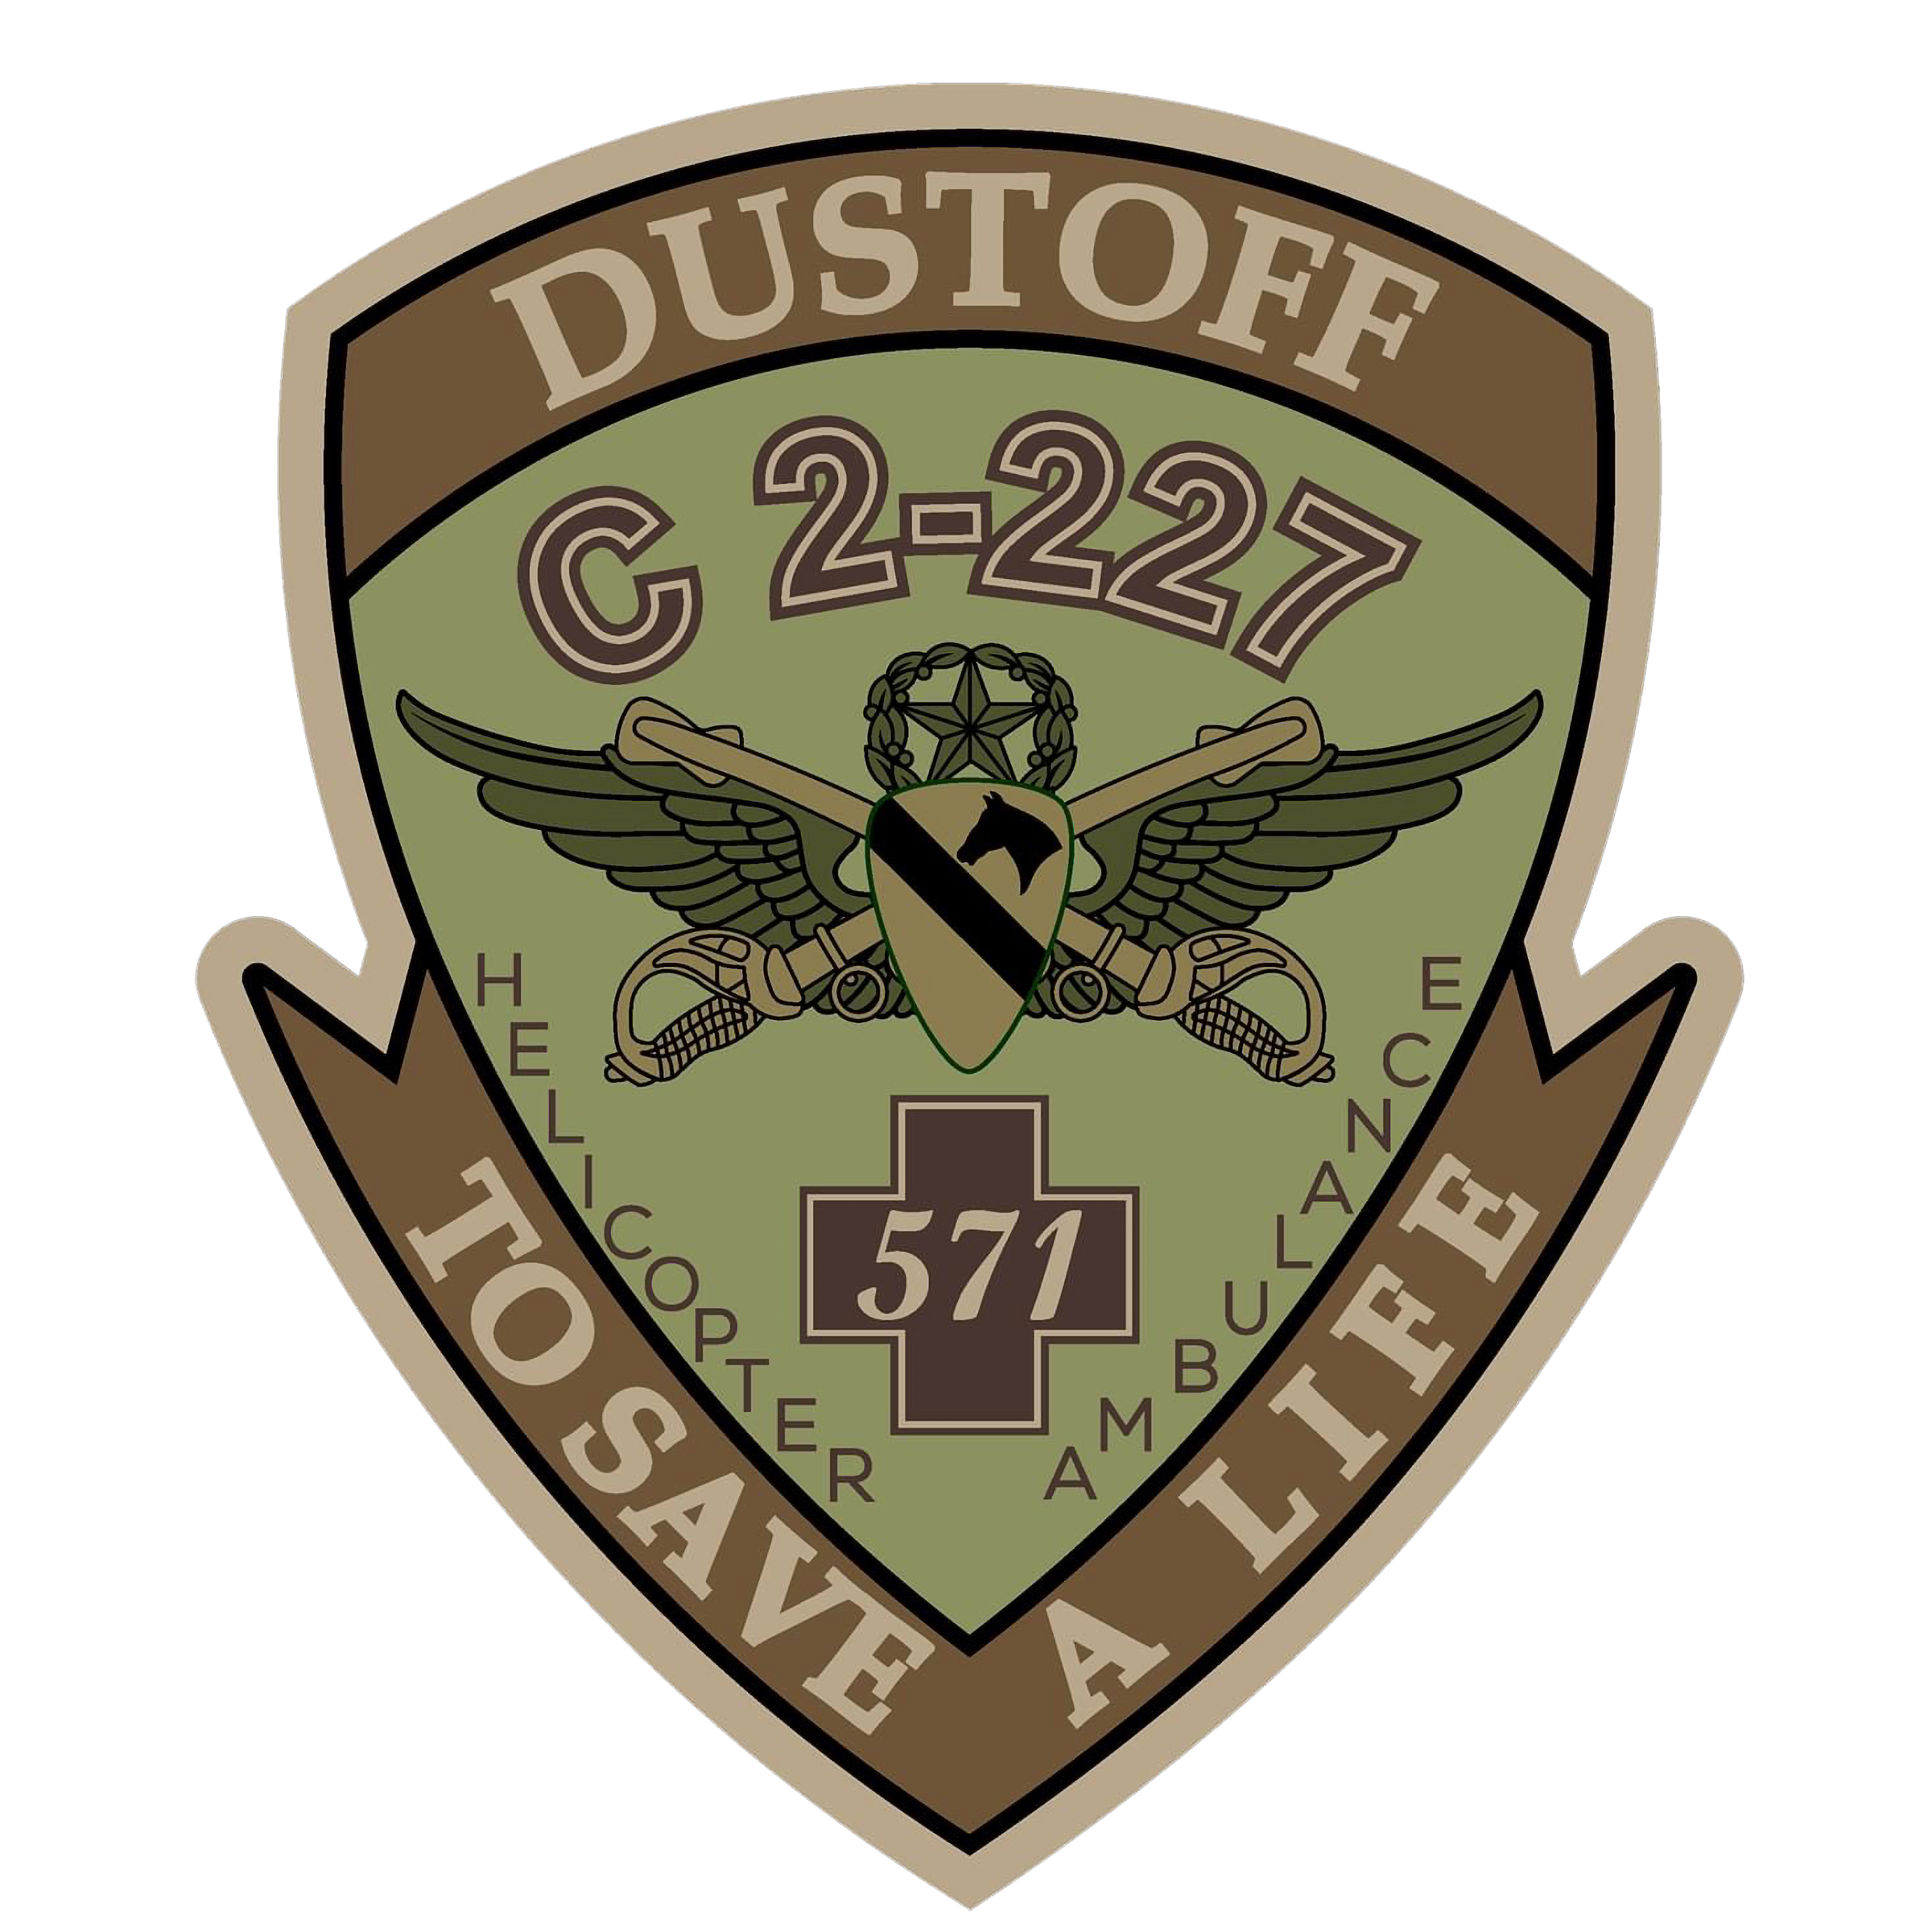 C Co, 2-227 AVN REGT "Longhorn Dustoff"